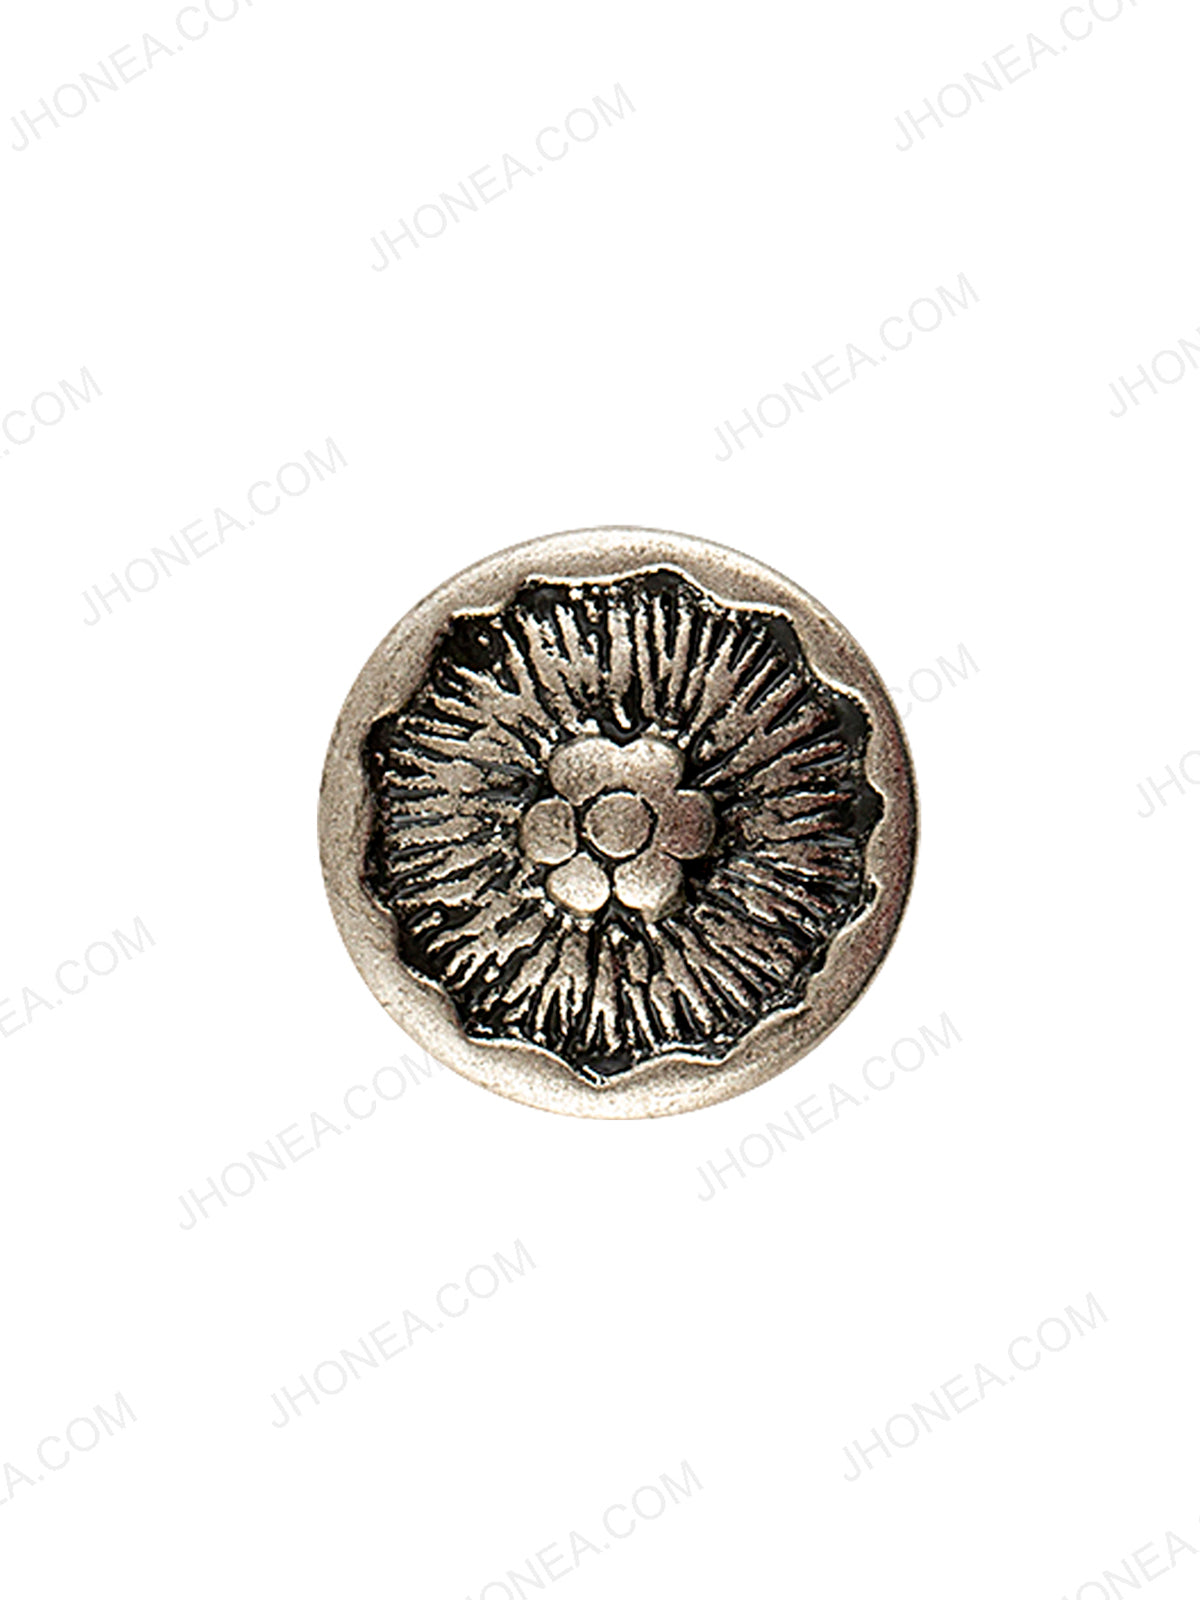 Floral Design Antique Silver Coat Button